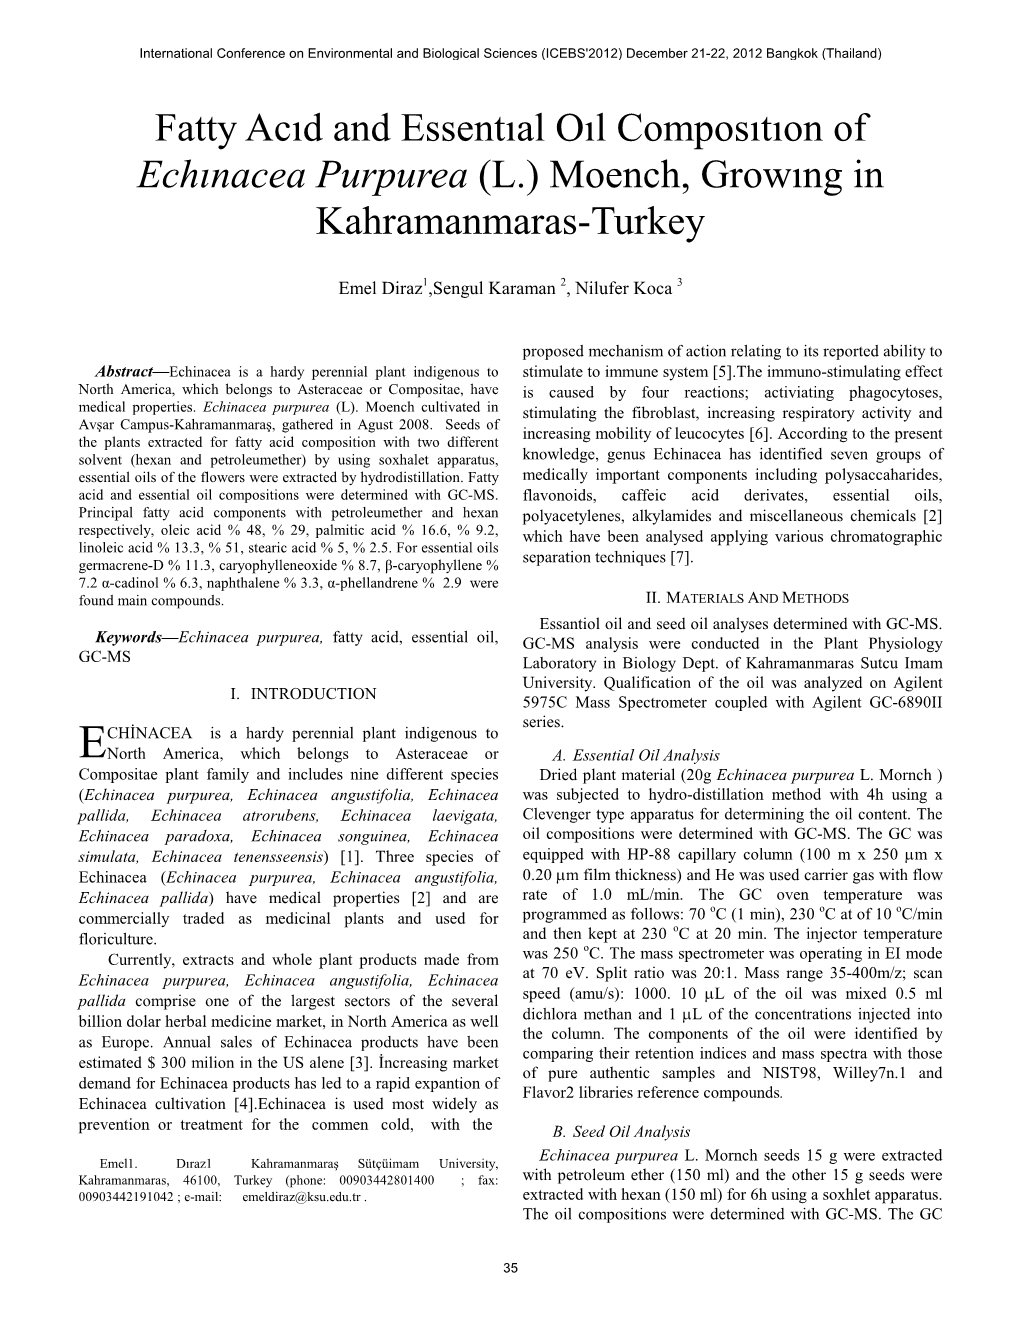 Fatty Acıd and Essentıal Oıl Composıtıon of Echınacea Purpurea (L.) Moench, Growıng in Kahramanmaras-Turkey